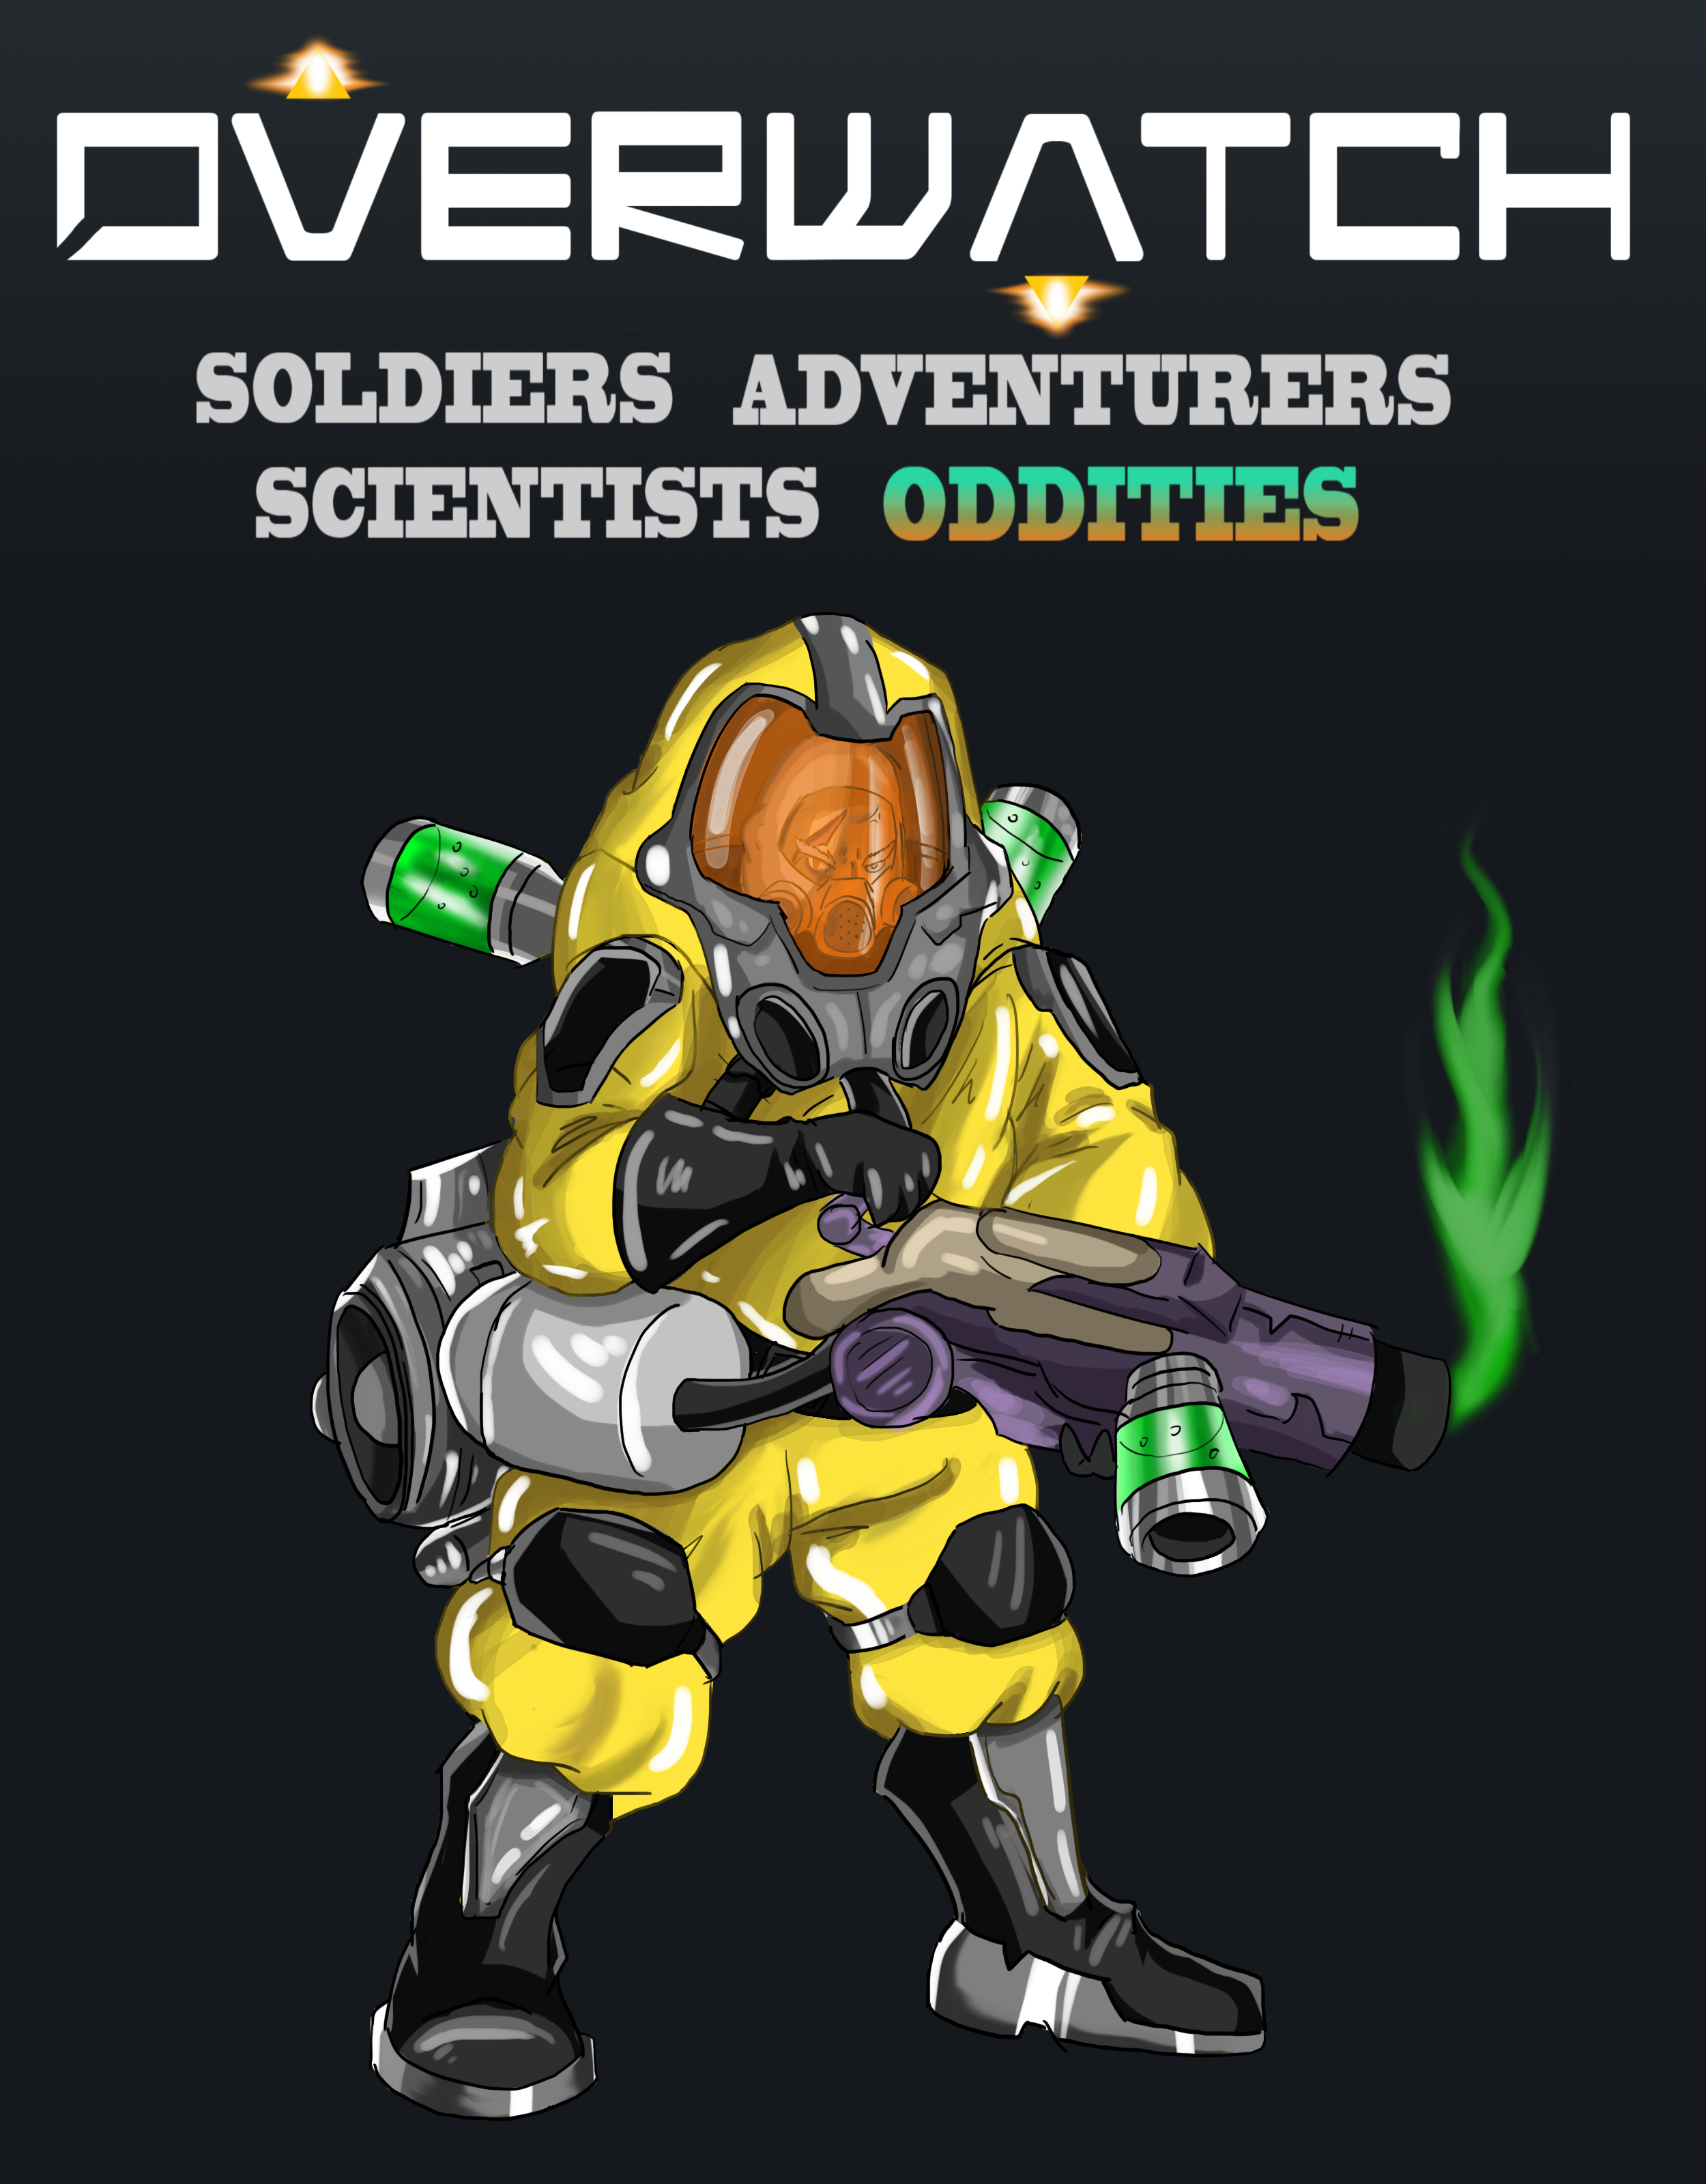 Overwatch - Soldiers. Scientists. Adventurers. Oddities.